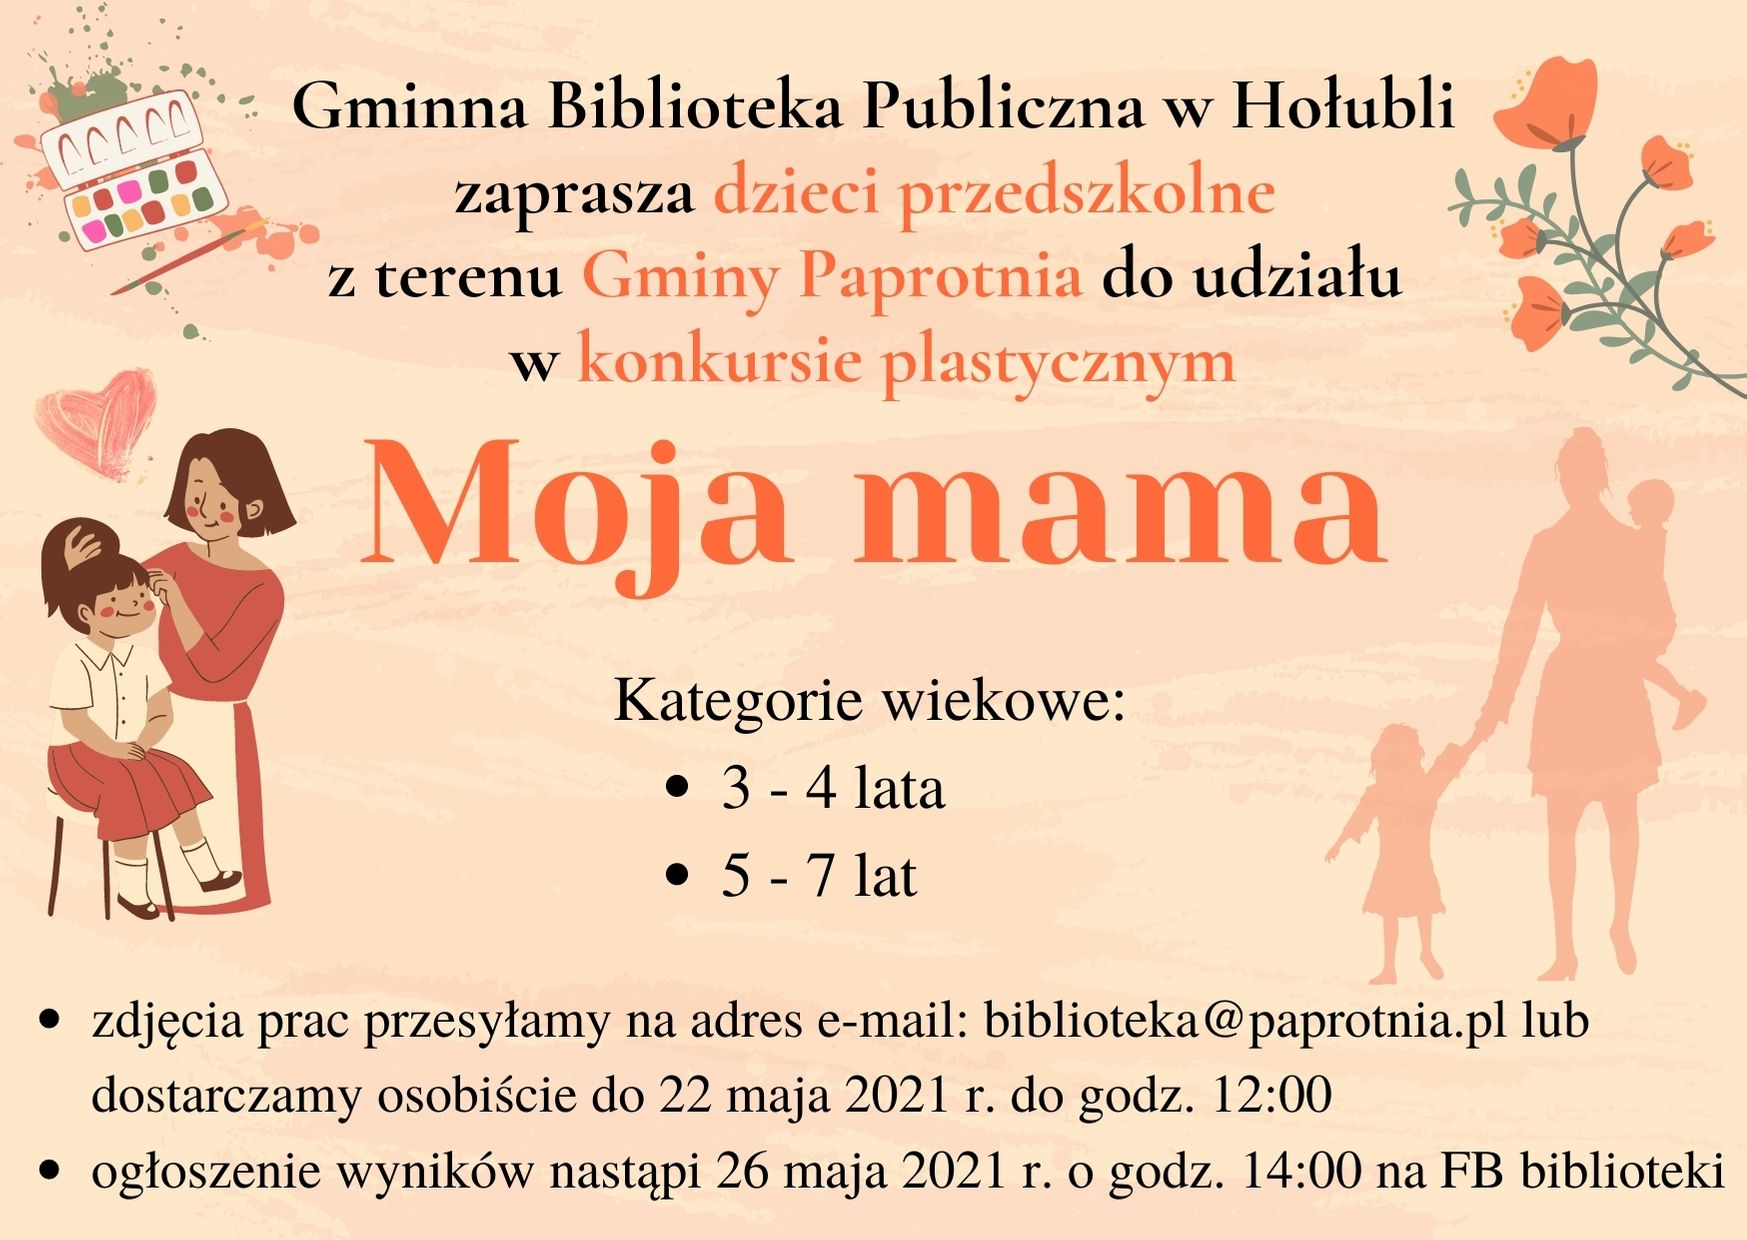 Gminna Biblioteka Publiczna w Hołubli zaprasza dzieci przedszkolne z terenu Gminy Paprotnia do udziału w konkursie Moja mama